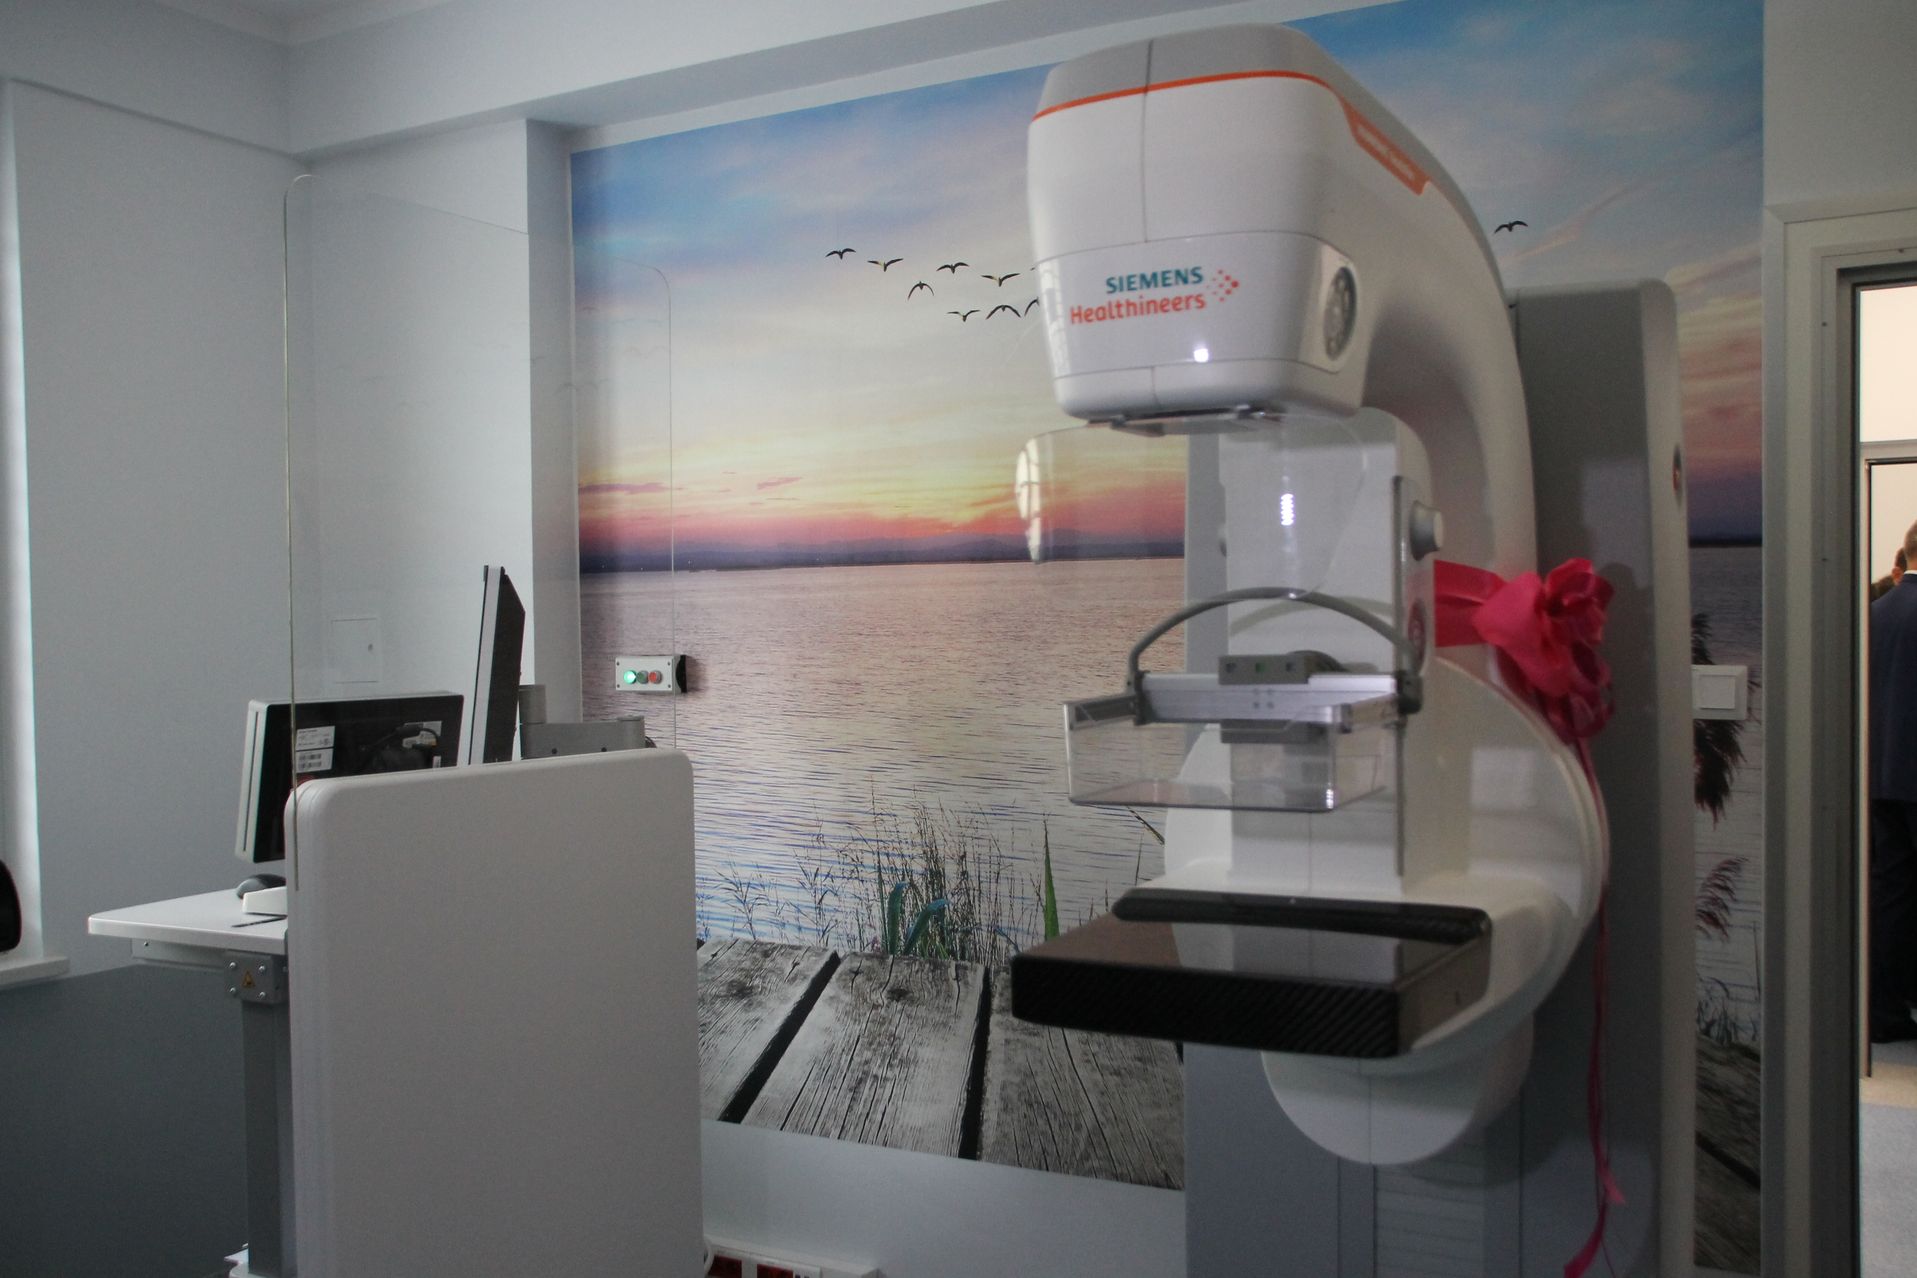 Wrocław: Bezpłatne badania mammograficzne – one mogą uratować życie